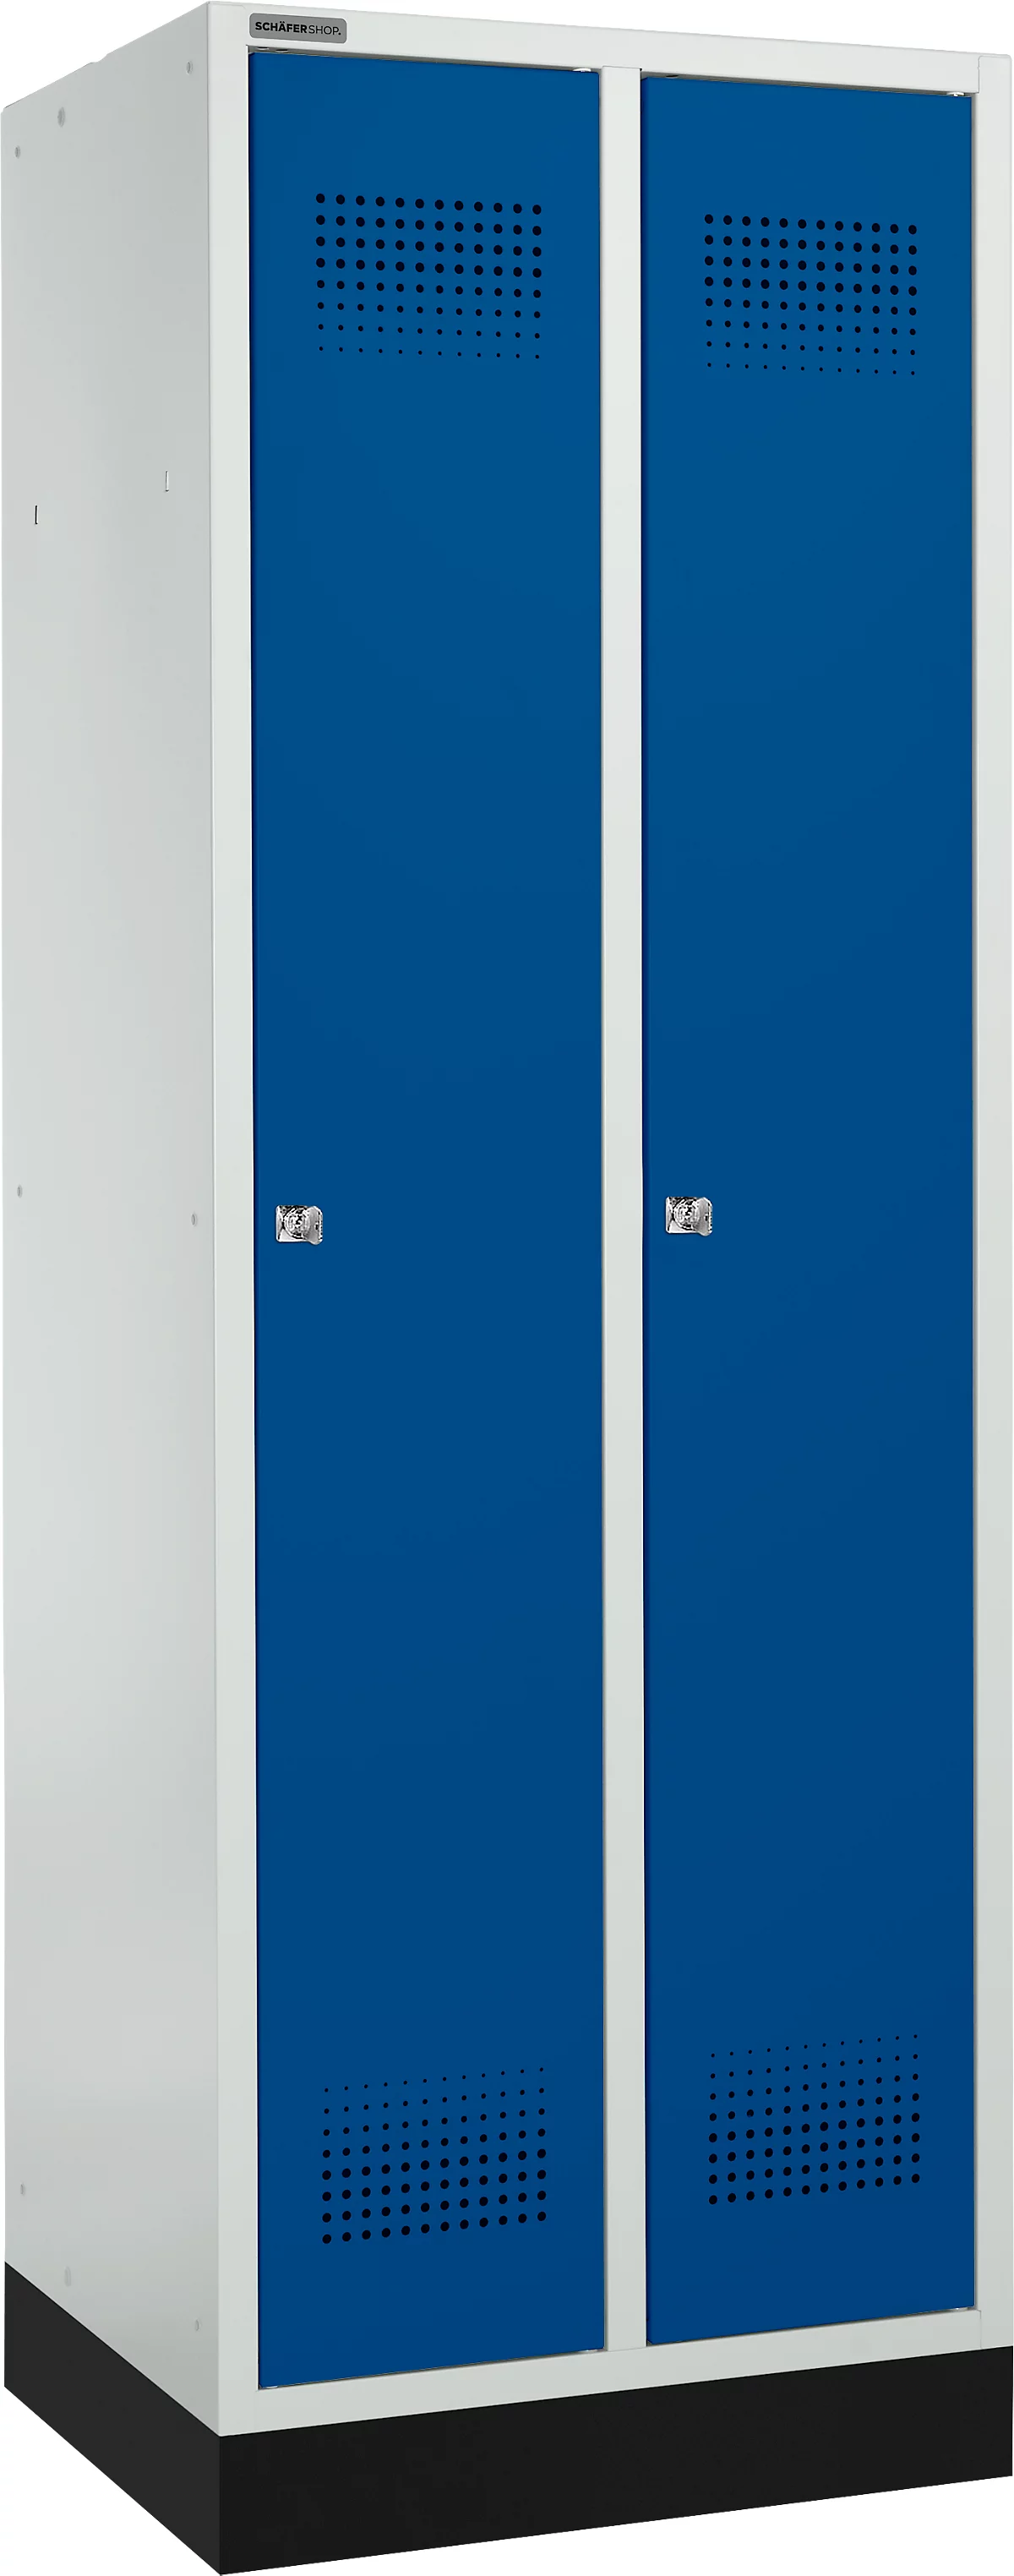 Schäfer Shop Genius Taquilla con zócalo, 2 compartimentos, anchura compartimento 300 mm, cerradura de cilindro, gris luminoso/azul genciana